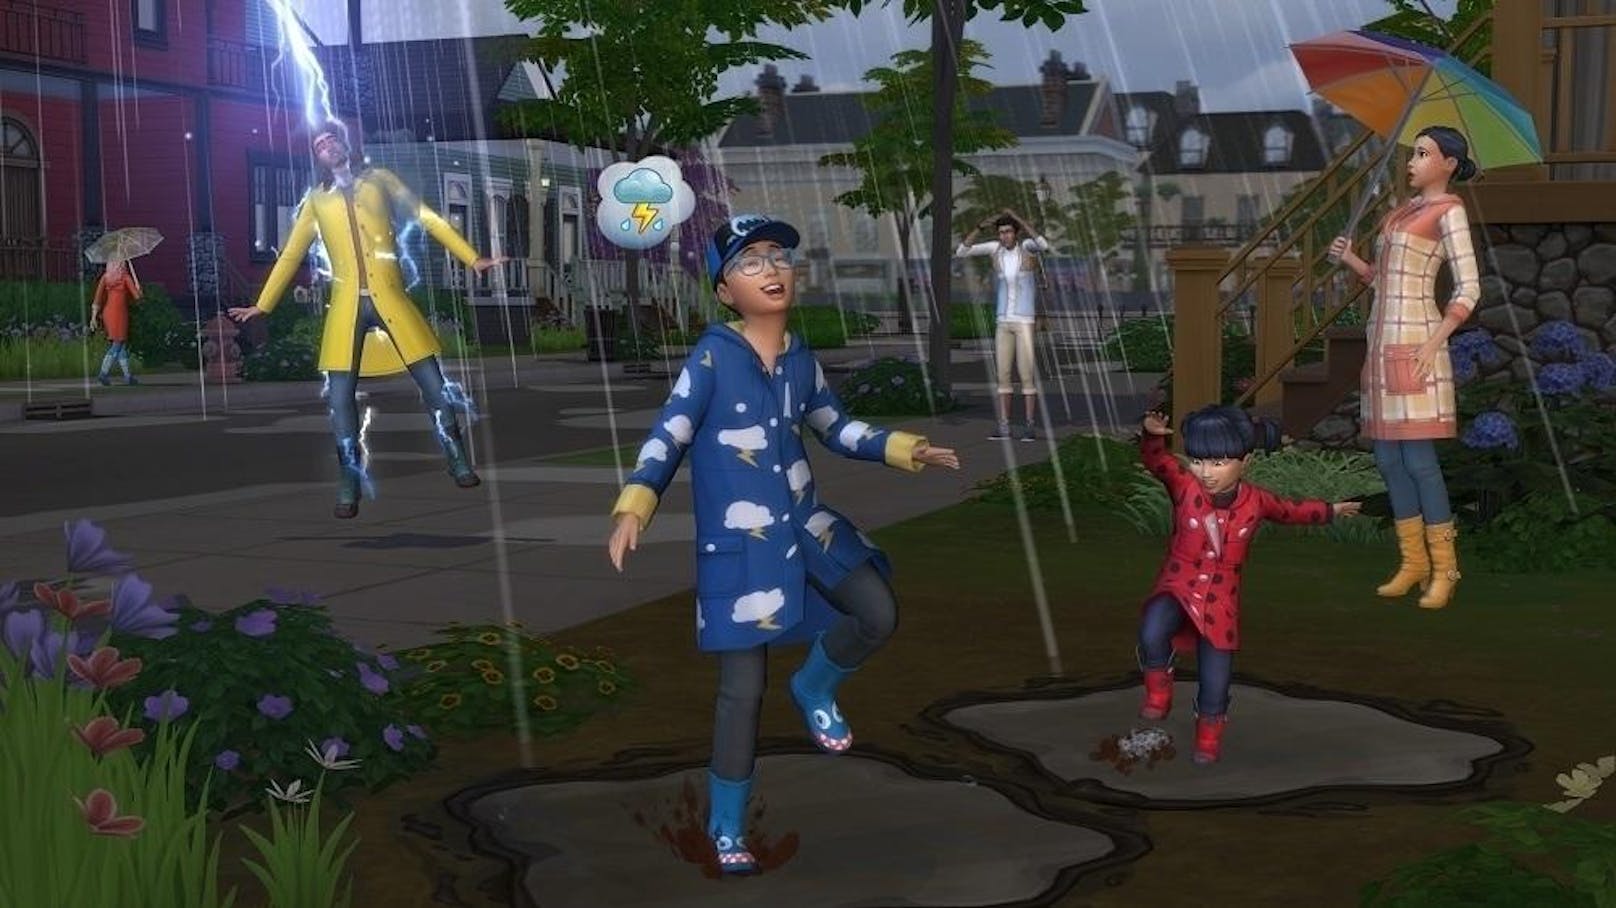 Electronic Arts und Maxis geben bekannt, dass die Erweiterung "Die Sims 4 Jahreszeiten" am 22. Juni für PC und Mac veröffentlicht wird. Diese enthält abwechslungsreiche Jahreszeiten mit Feiertagen, Wetter und Familienaktivitäten und bietet den Spielern auf diese Weise unterhaltsame Möglichkeiten, mit ihren Sims die sich dynamisch verändernden Wetterbedingungen zu erleben.